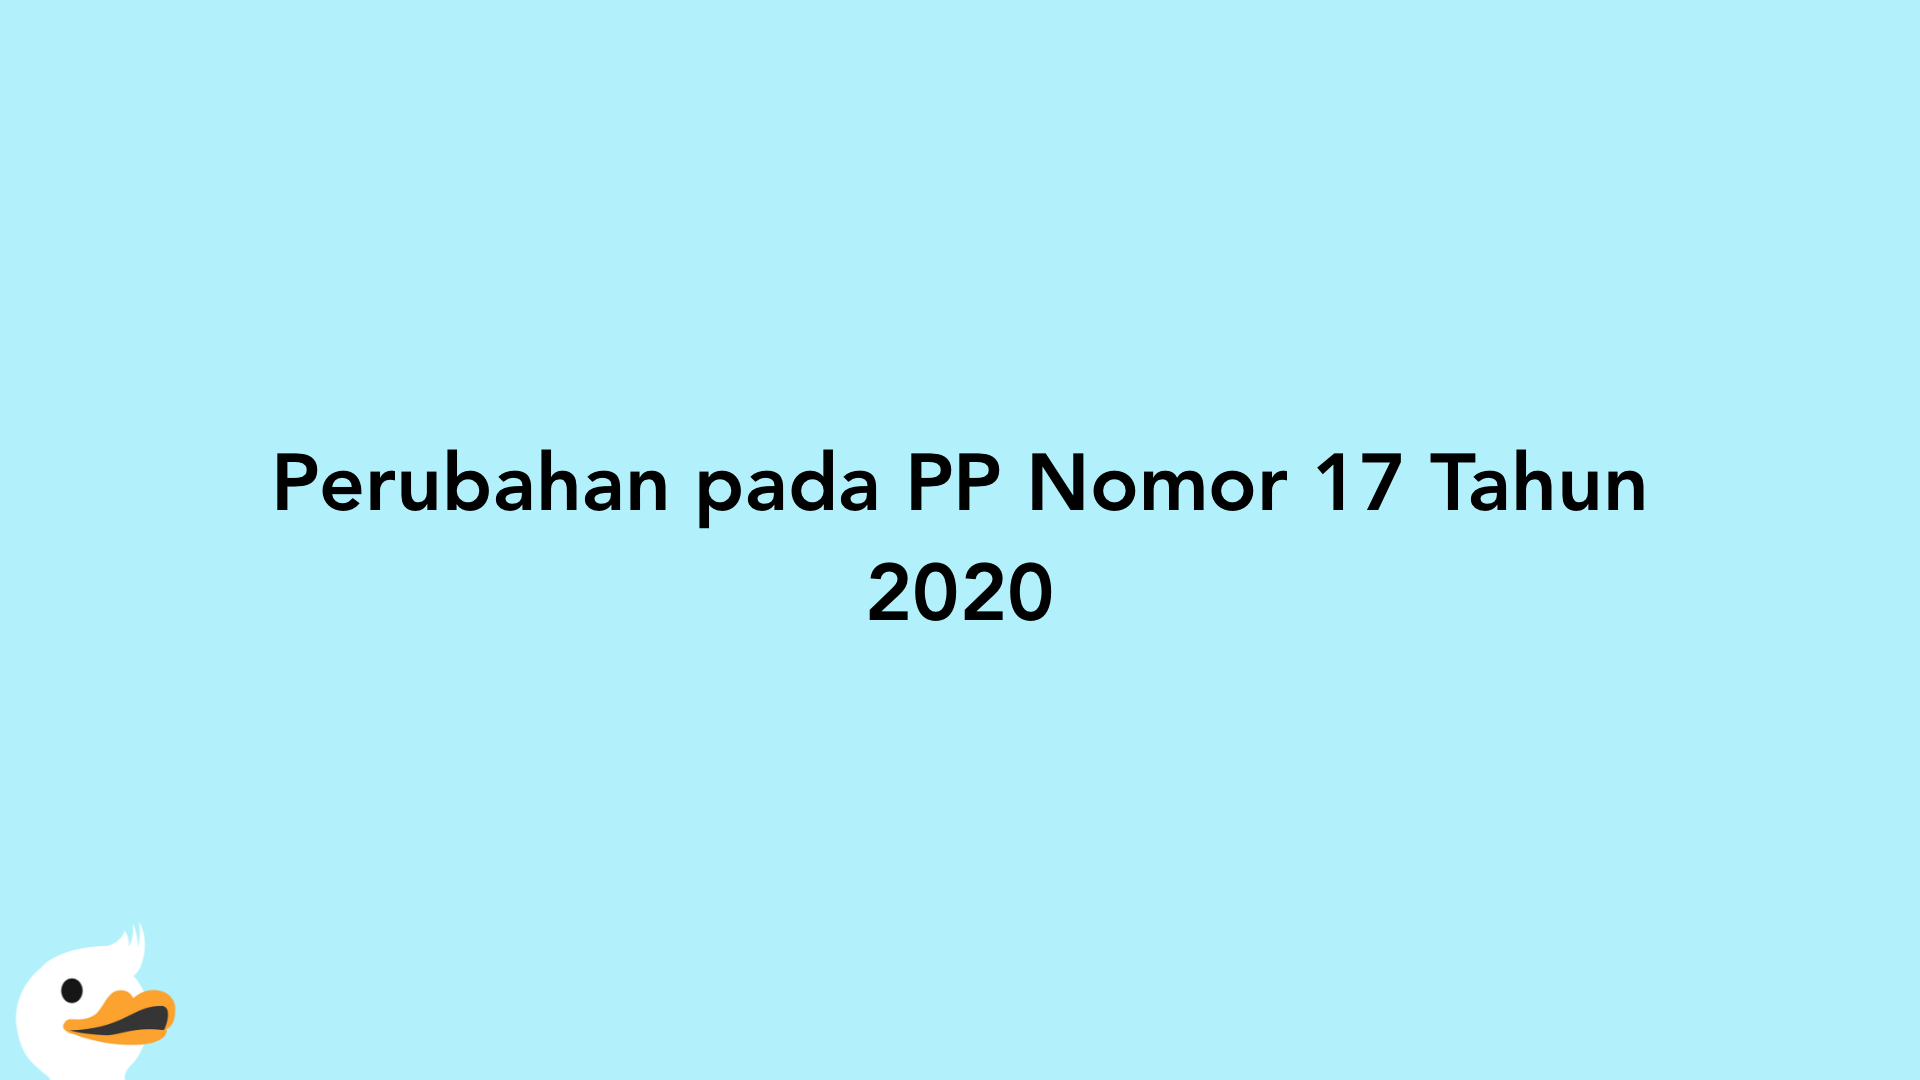 Perubahan pada PP Nomor 17 Tahun 2020